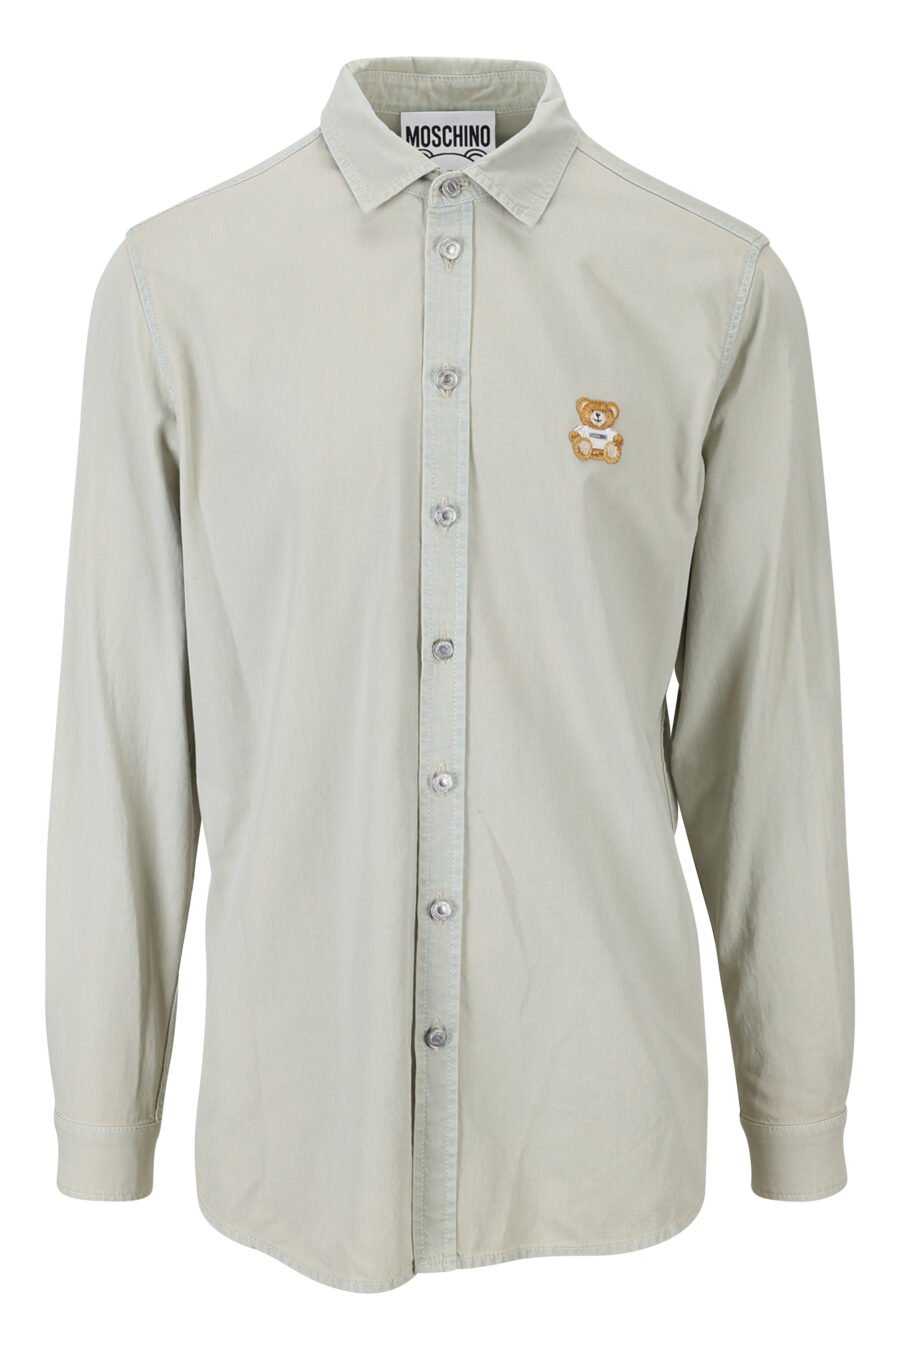 Camisa vaquera gris desteñida con logo oso - 889316852417